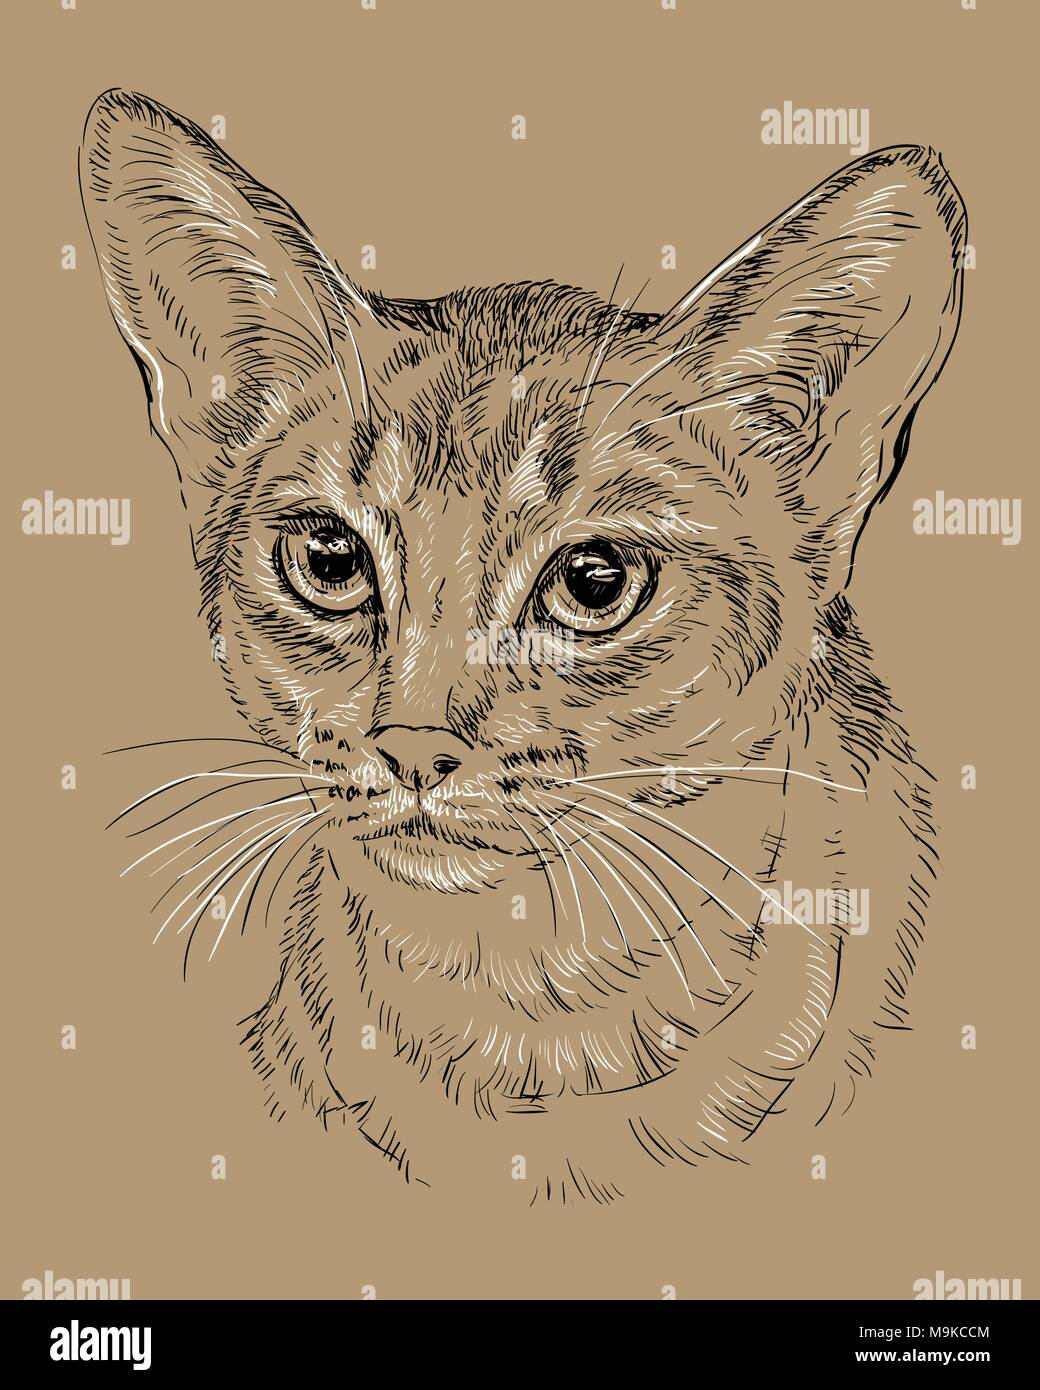 Contour vectoriel portrait monochrome de curieux chat abyssin en noir et blanc. Dessin illustration isolé sur fond brun Illustration de Vecteur